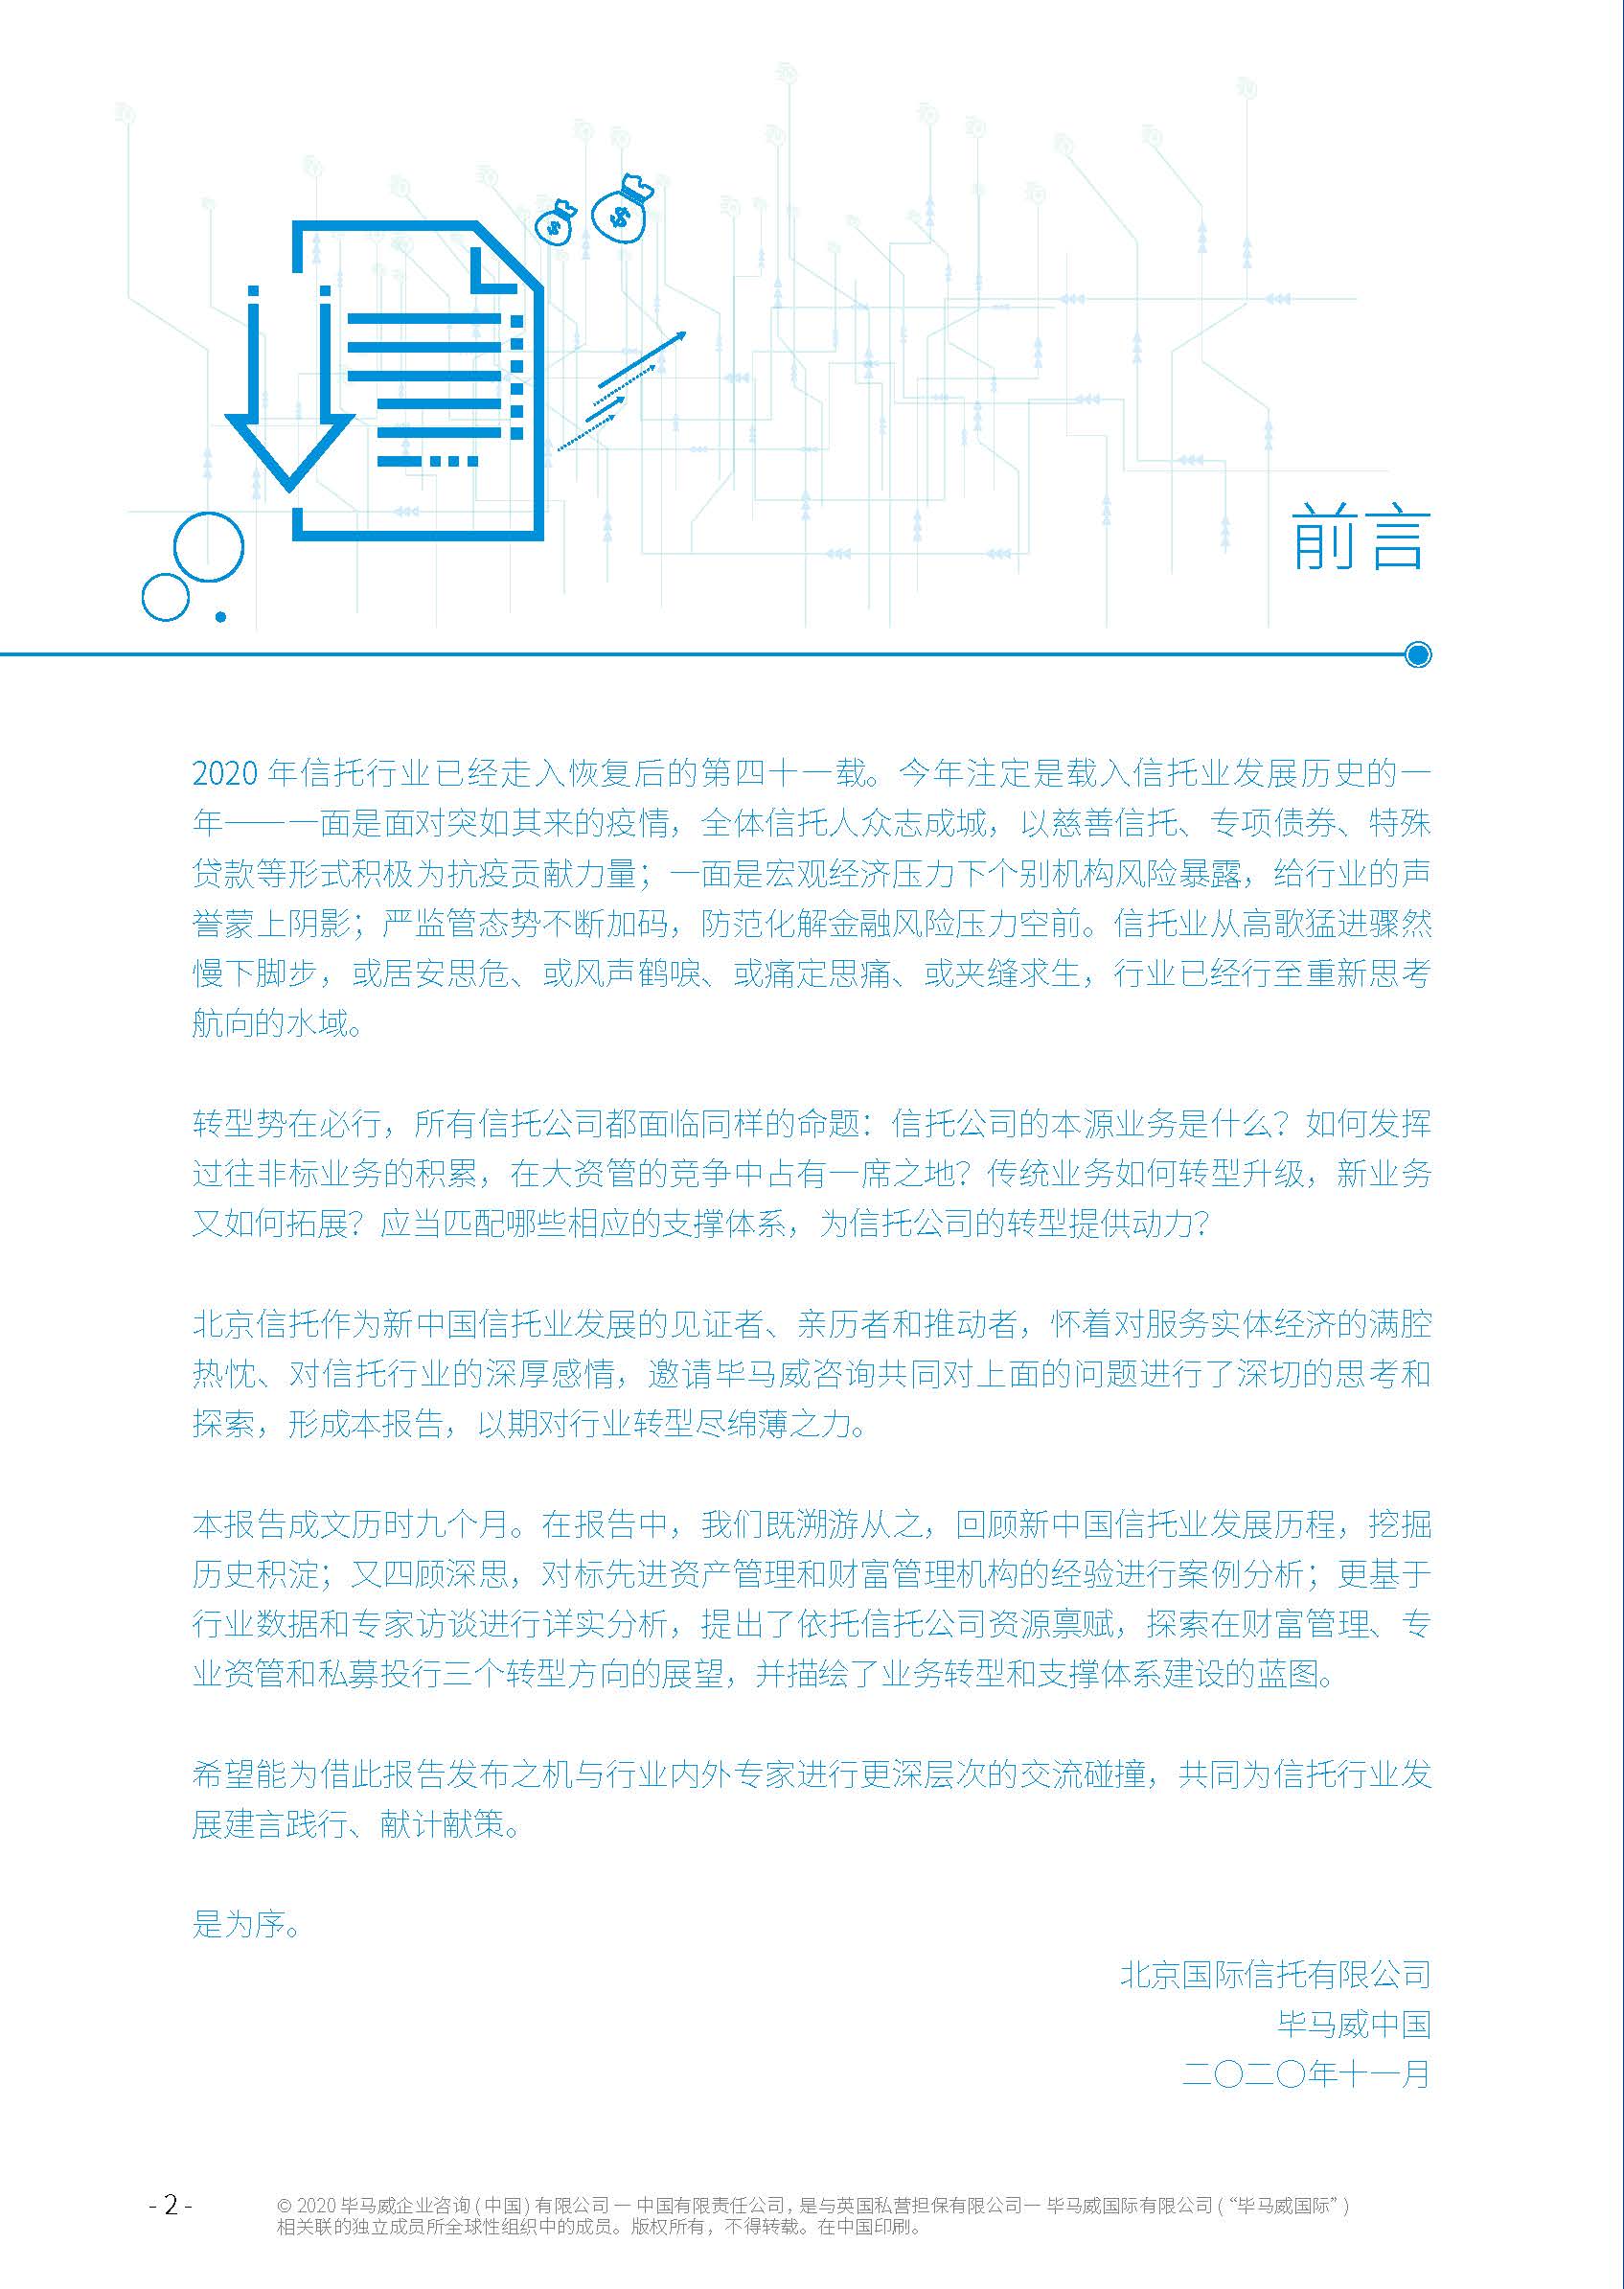 毕马威：中国信托行业发展趋势和战略转型研究报告（39页）_页面_02.jpg